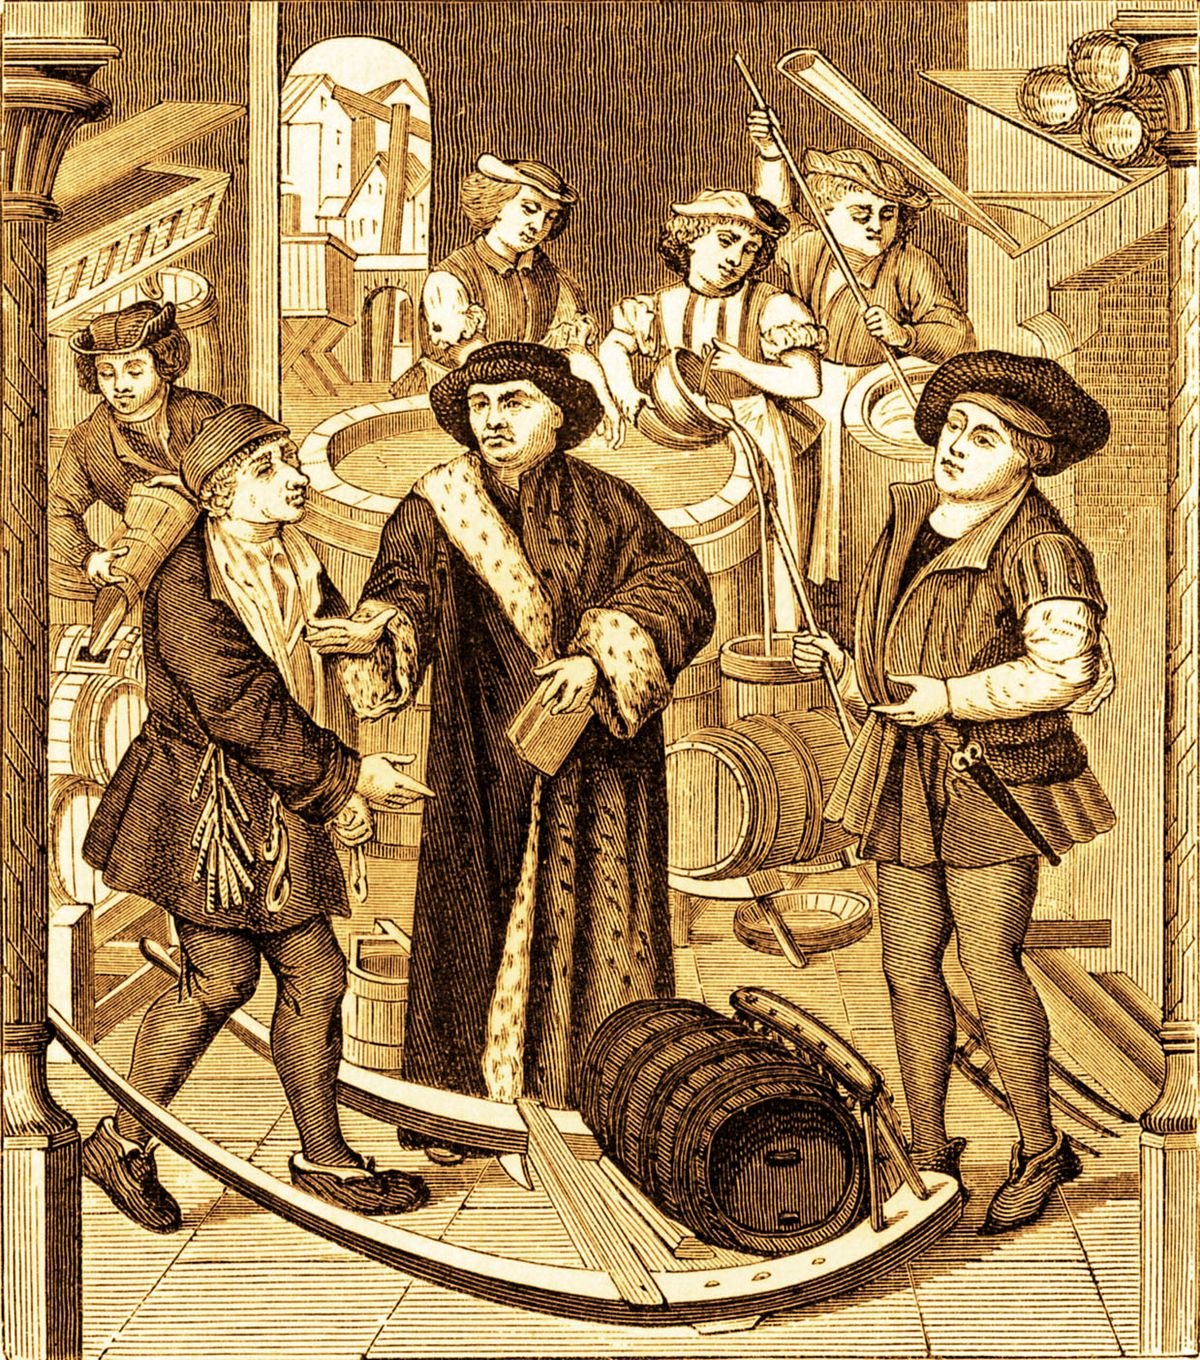 Did Medieval People Drink Beer Instead of Water?